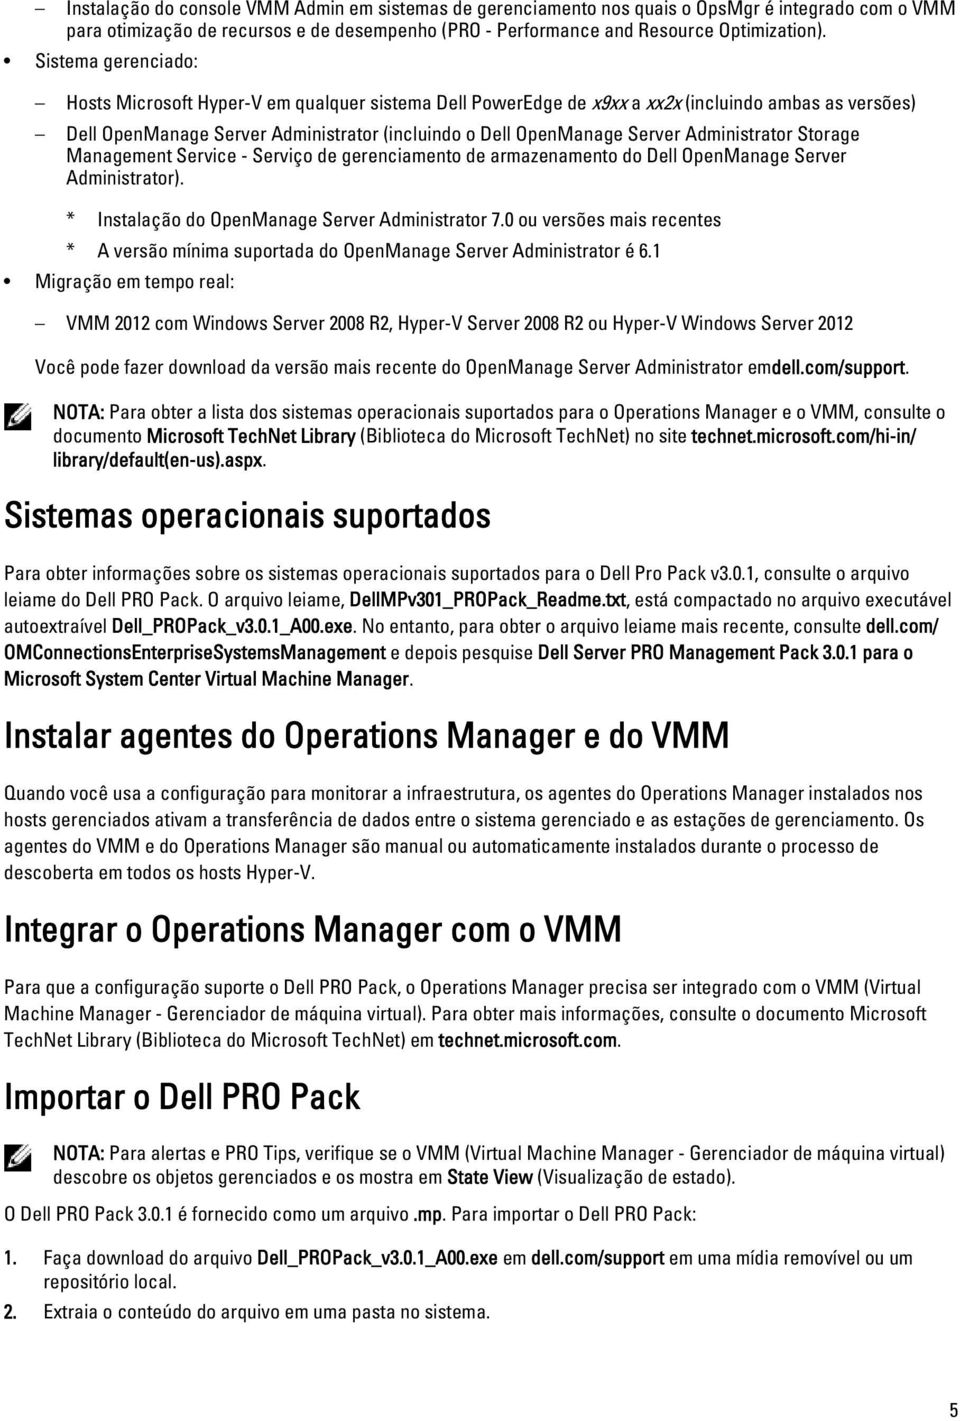 Administrator Storage Management Service - Serviço de gerenciamento de armazenamento do Dell OpenManage Server Administrator). * Instalação do OpenManage Server Administrator 7.